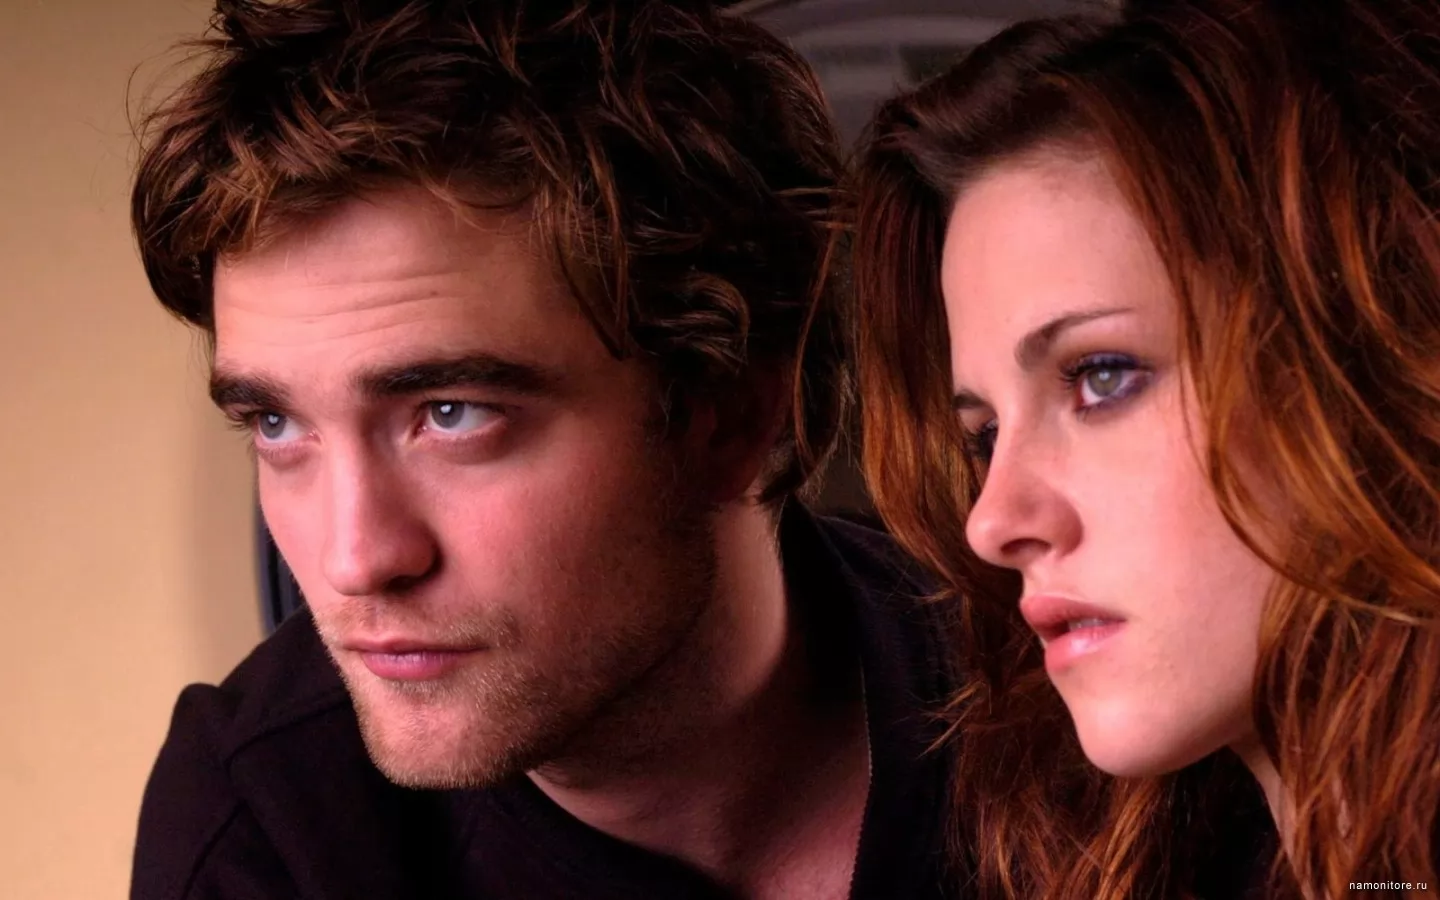 Twilight. Protagonists of a film, films x